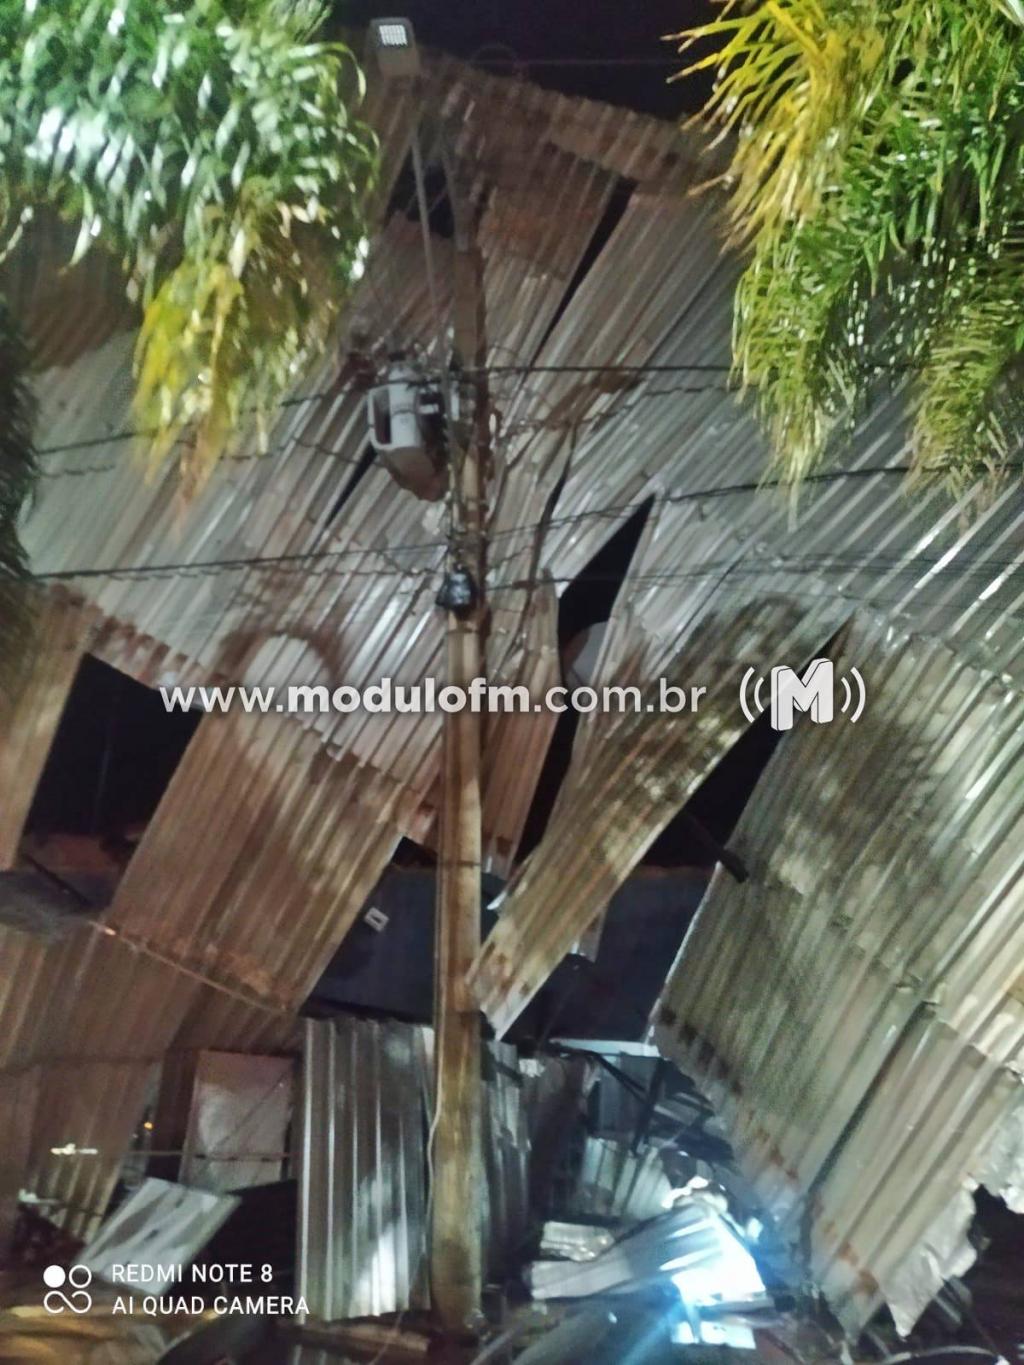 Imagem 3 do post Ventania arranca telhado de loja que fica pendurado sobre fiação elétrica em Perdizes